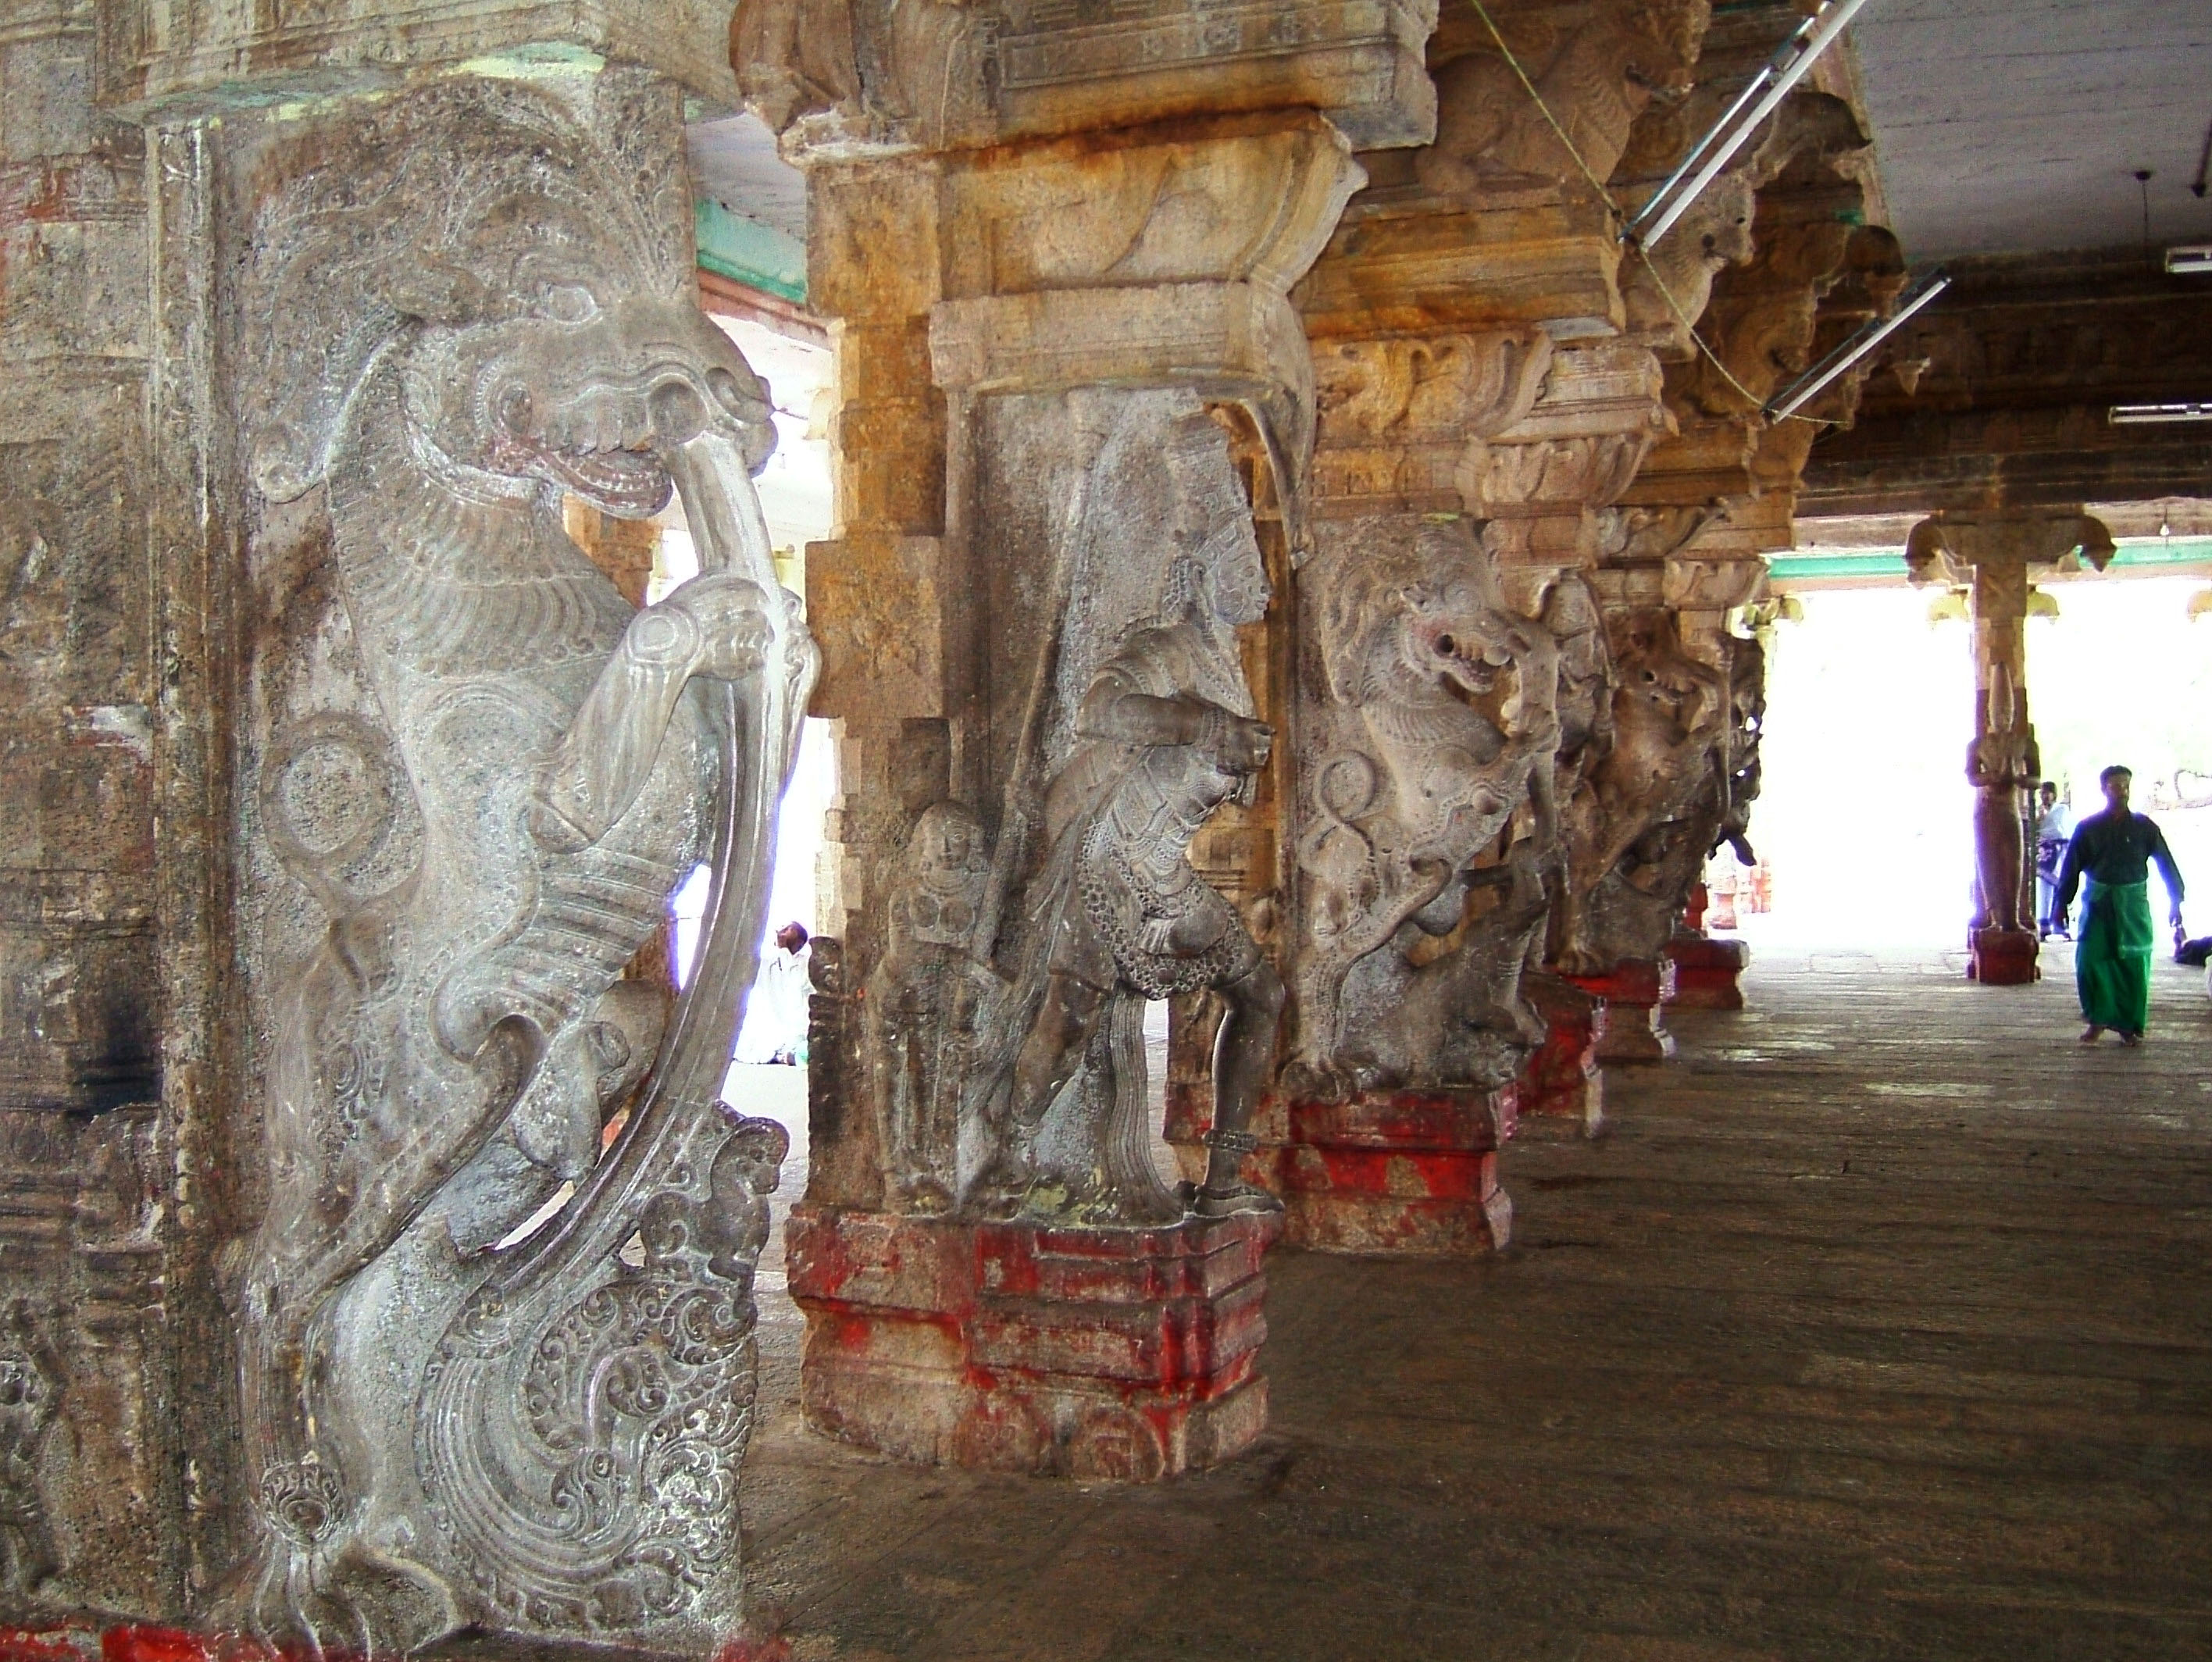 Madurai Alagar Kovil Temple pillars India May 2004 04